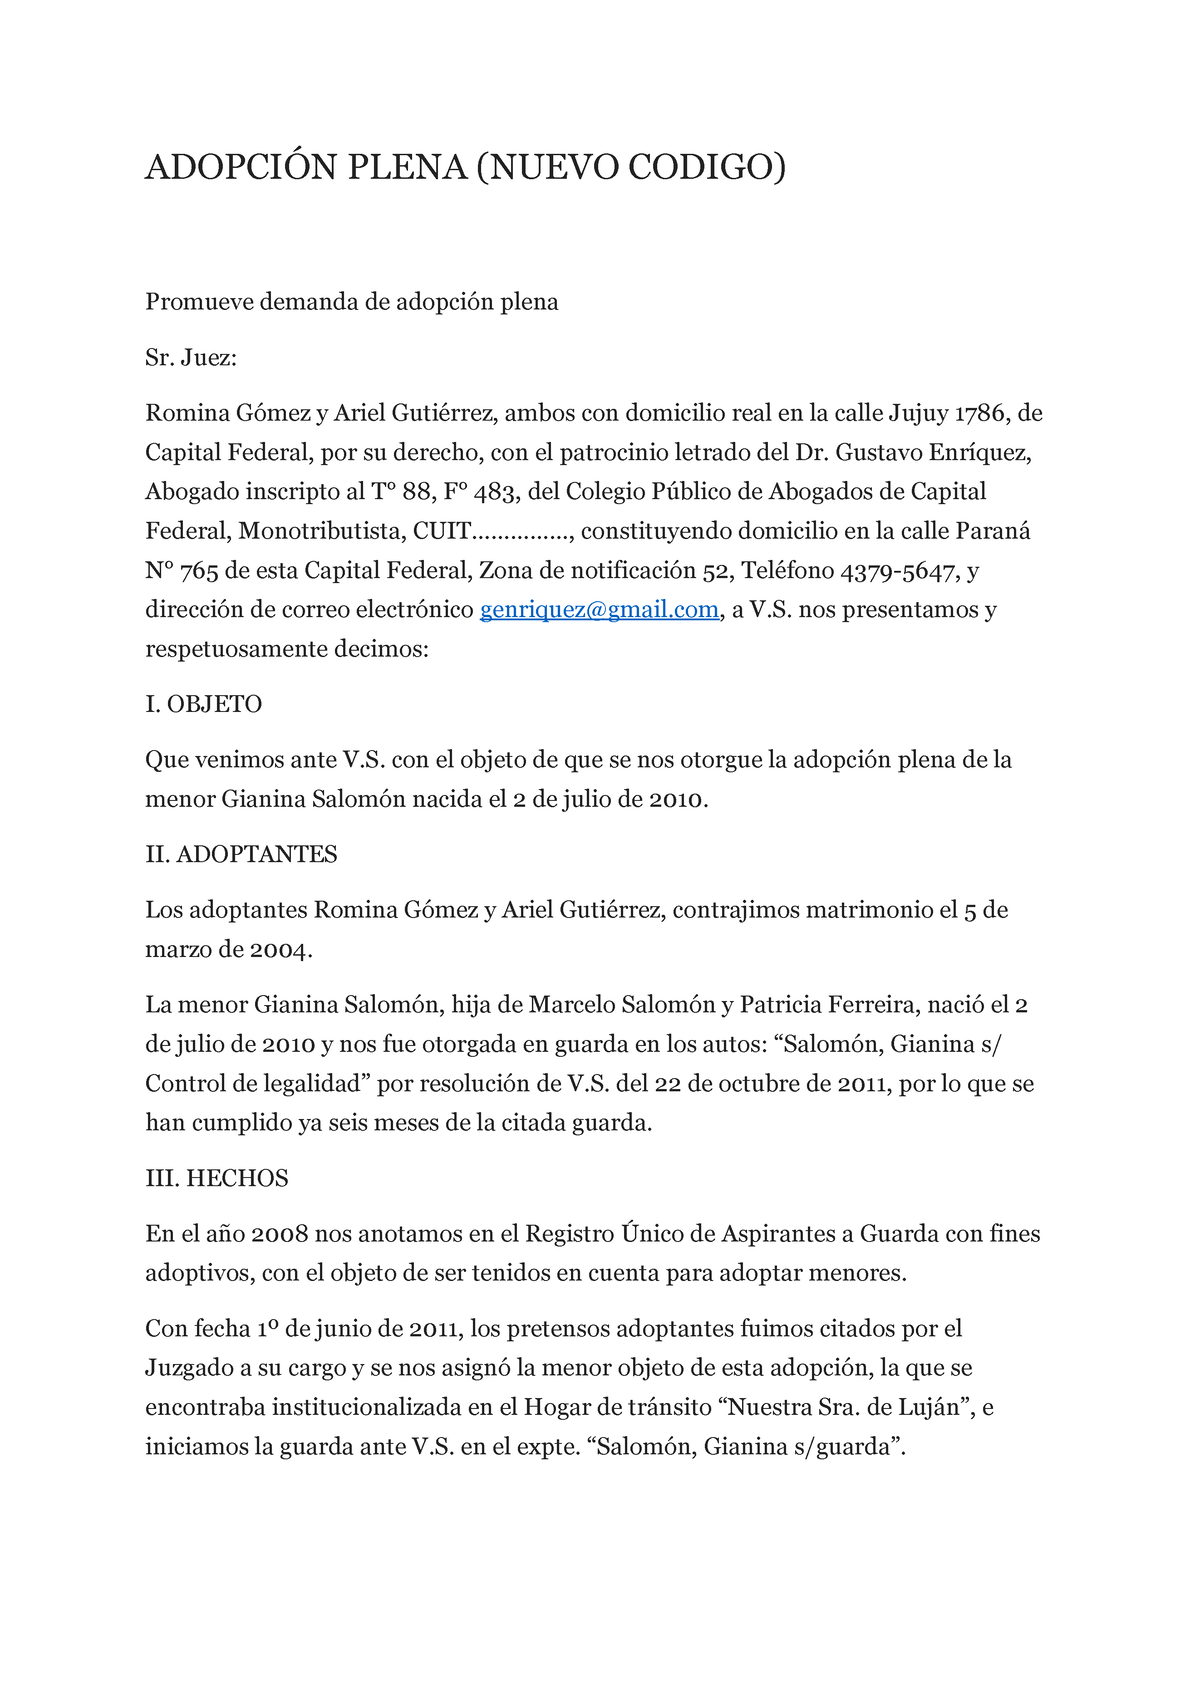 PPP3 Adopcion Plena - modelos de escritos - ADOPCIÓN PLENA (NUEVO CODIGO)  Promueve demanda de - Studocu